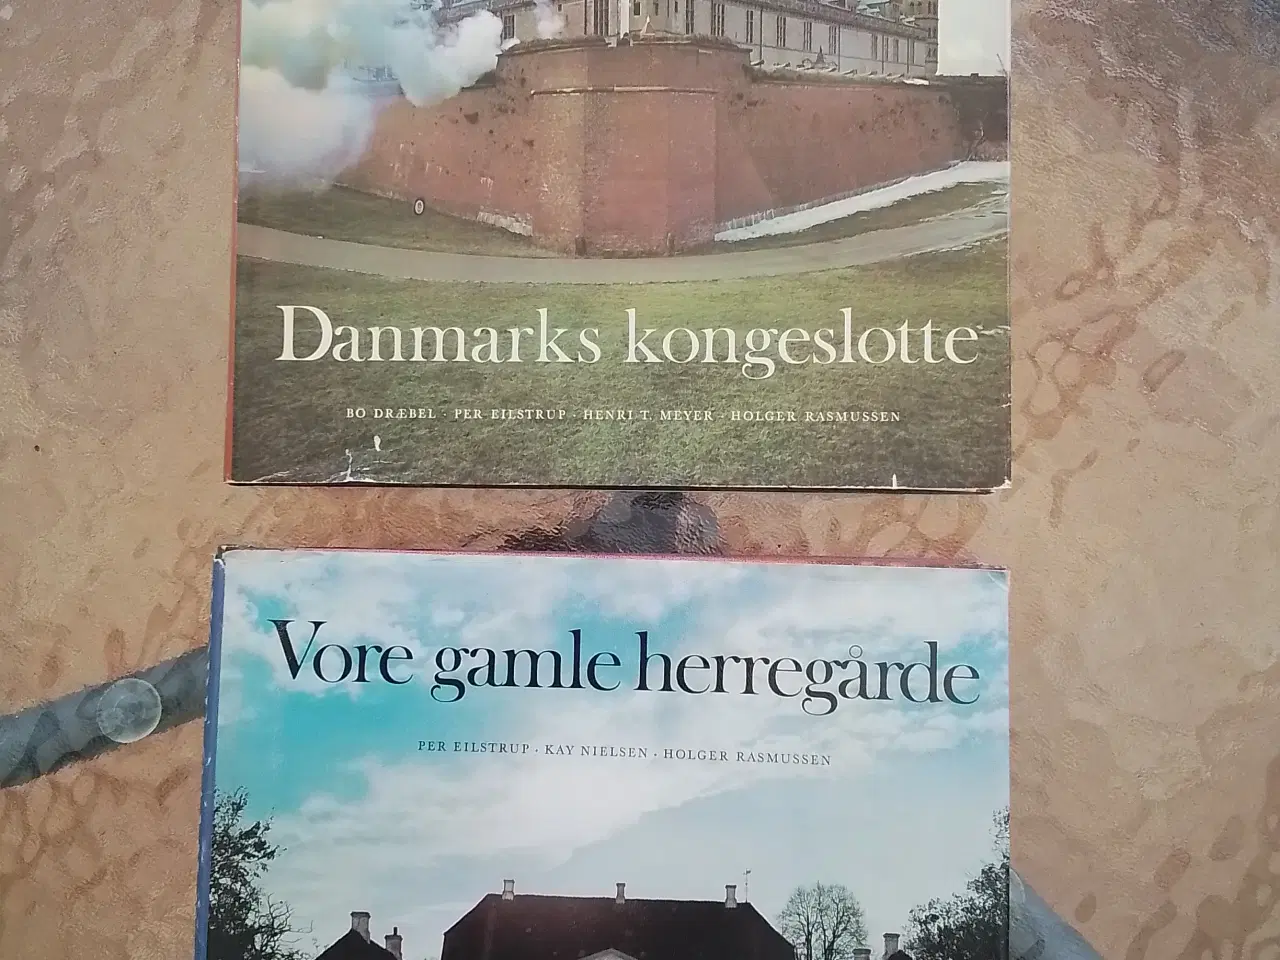 Billede 1 - Bog "Danmarks kongeslotte" m.fl.